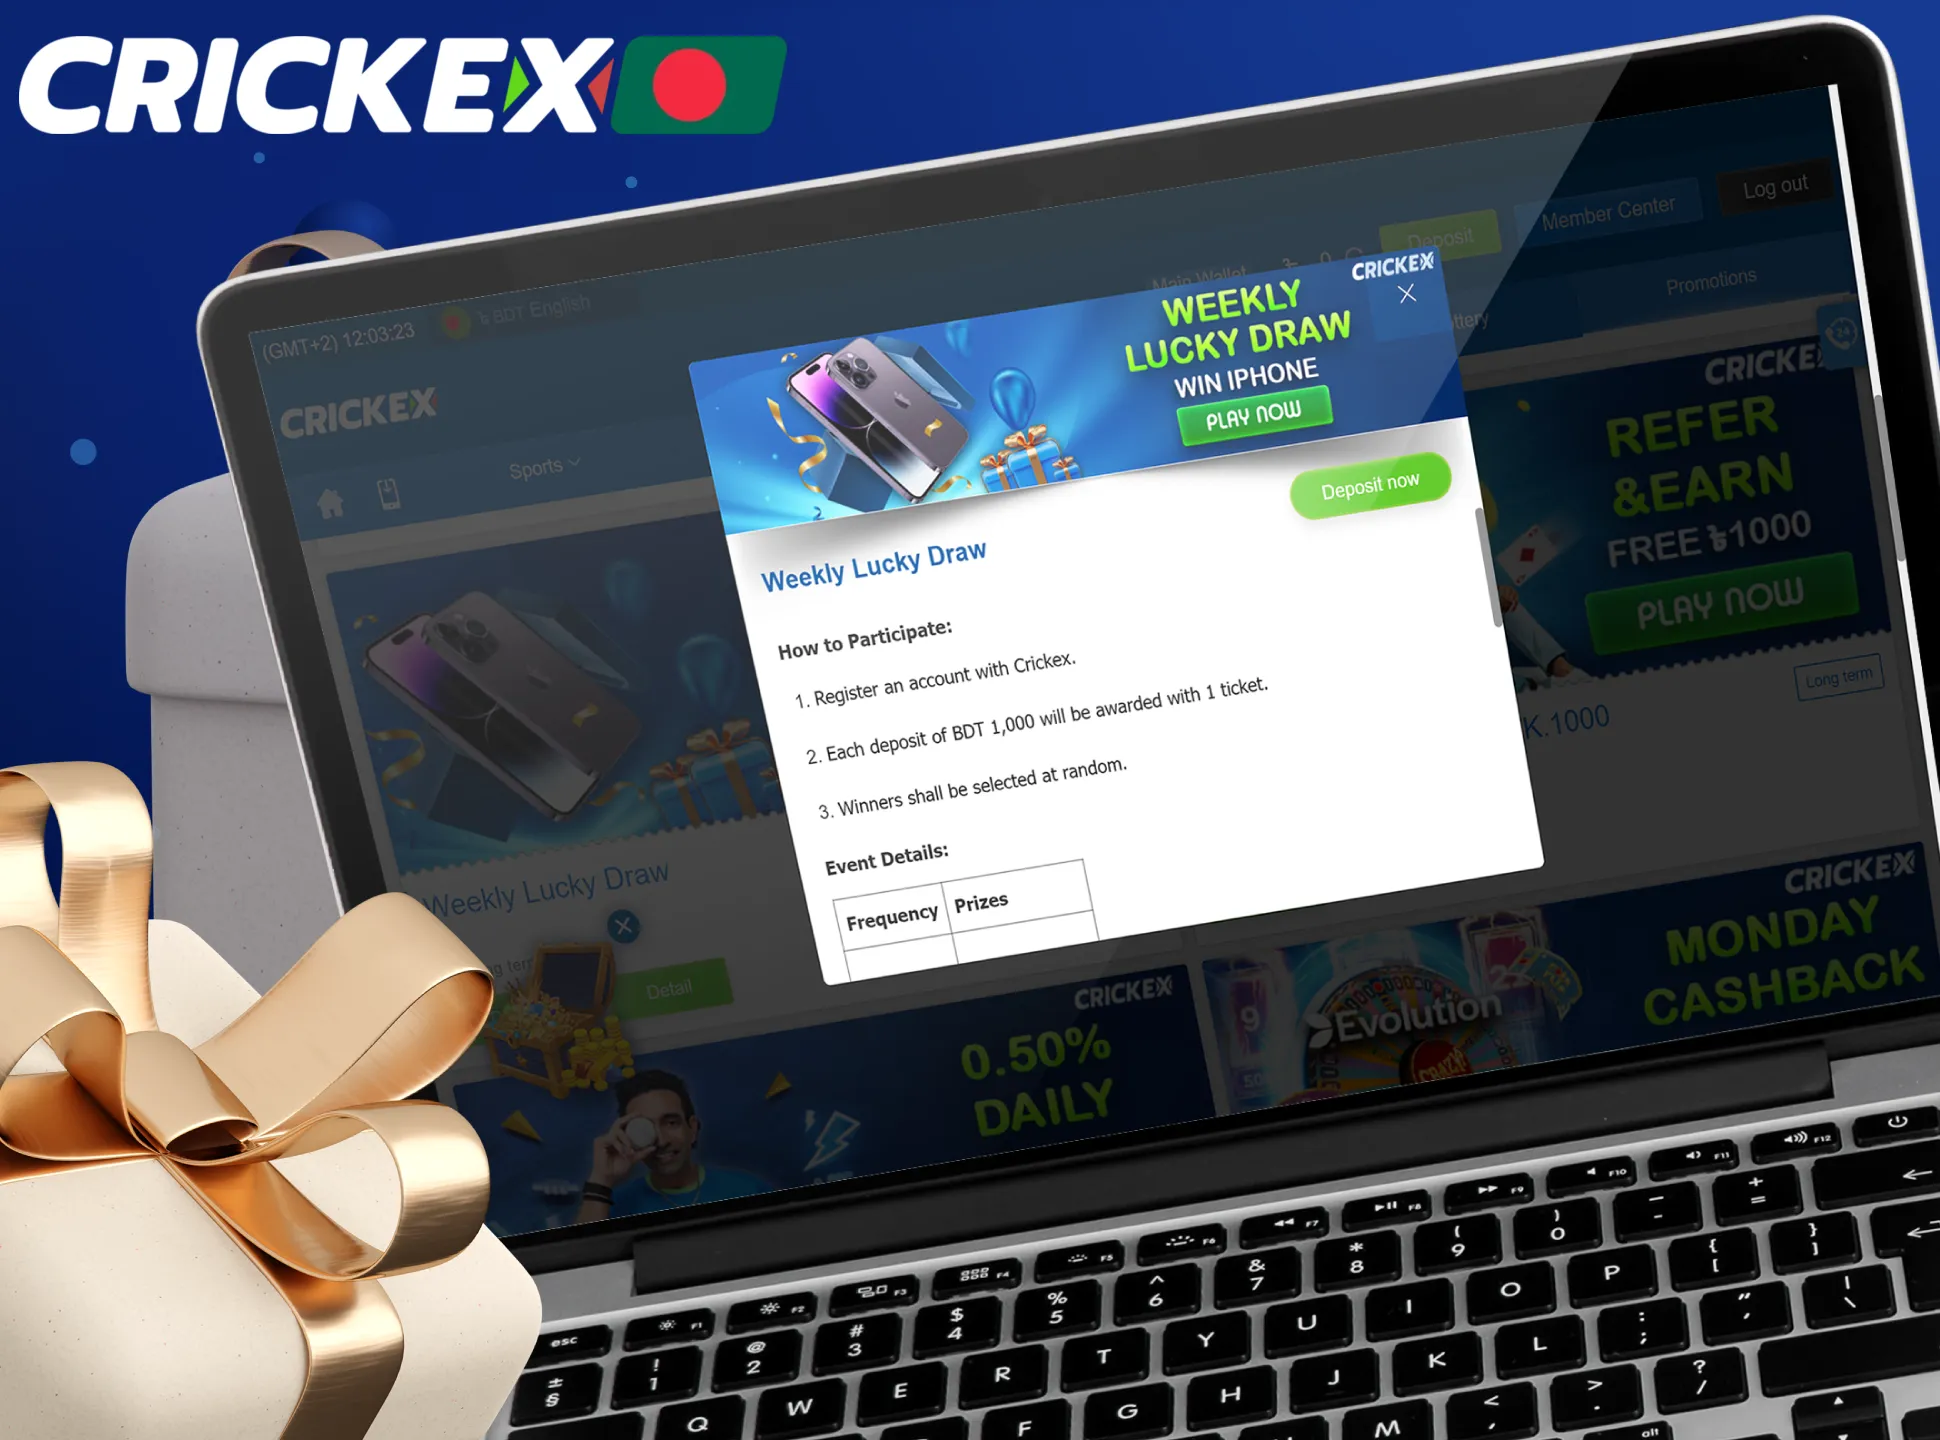 Visit Crickex website each week for additional tennis betting reward.